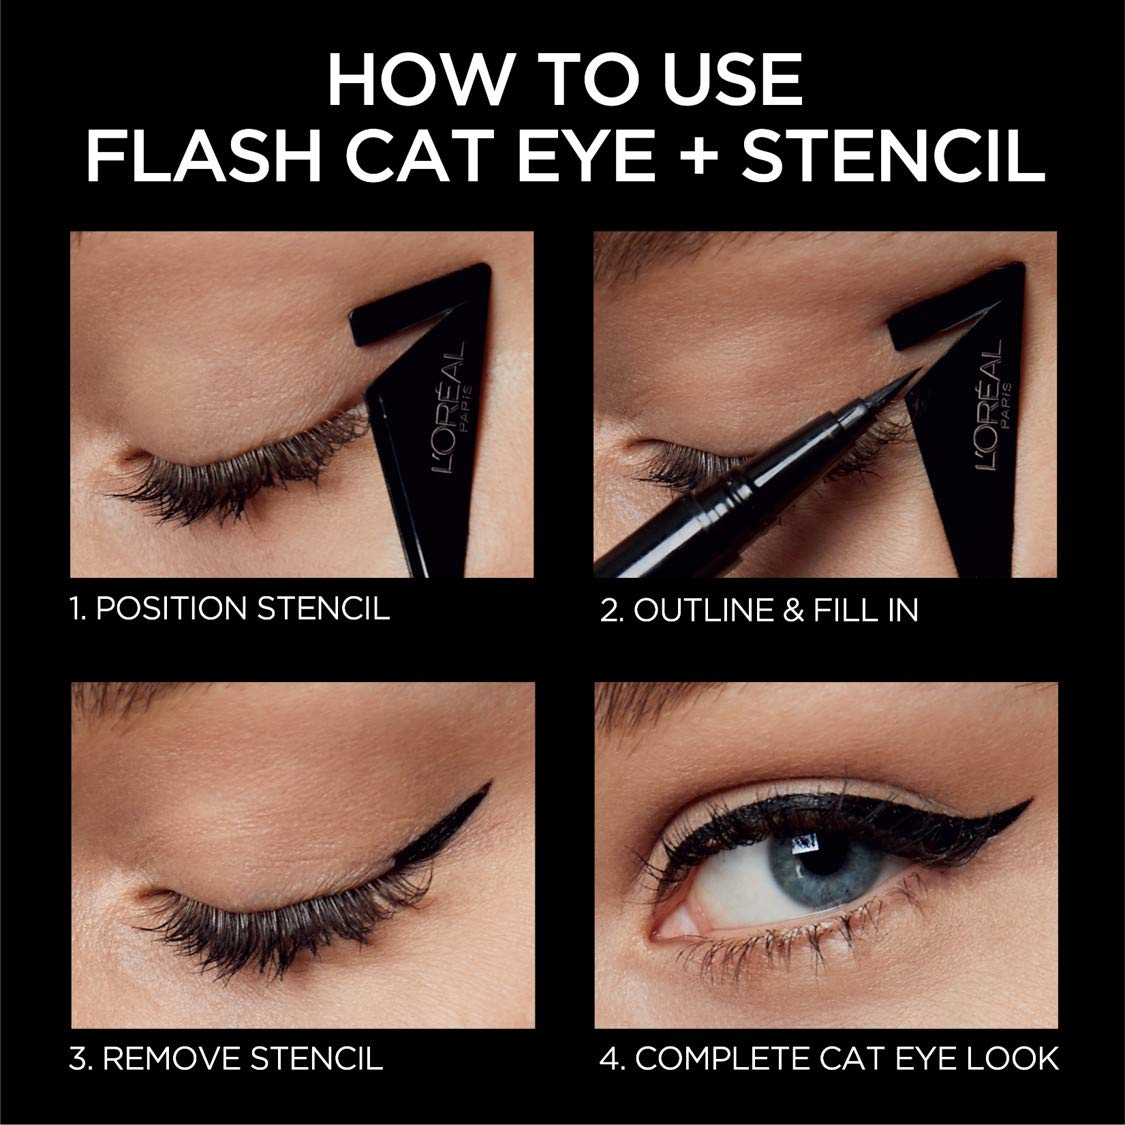 L'Oreal Paris Flash Cat Eye By Superliner Long Lasting Eyeliner là bút kẻ mắt dạng lỏng đầu tiên trên thị trường có thước kẻ siêu dễ. Và đầu cọ siêu chuẩn để vẽ mắt mèo trong tích tắc.